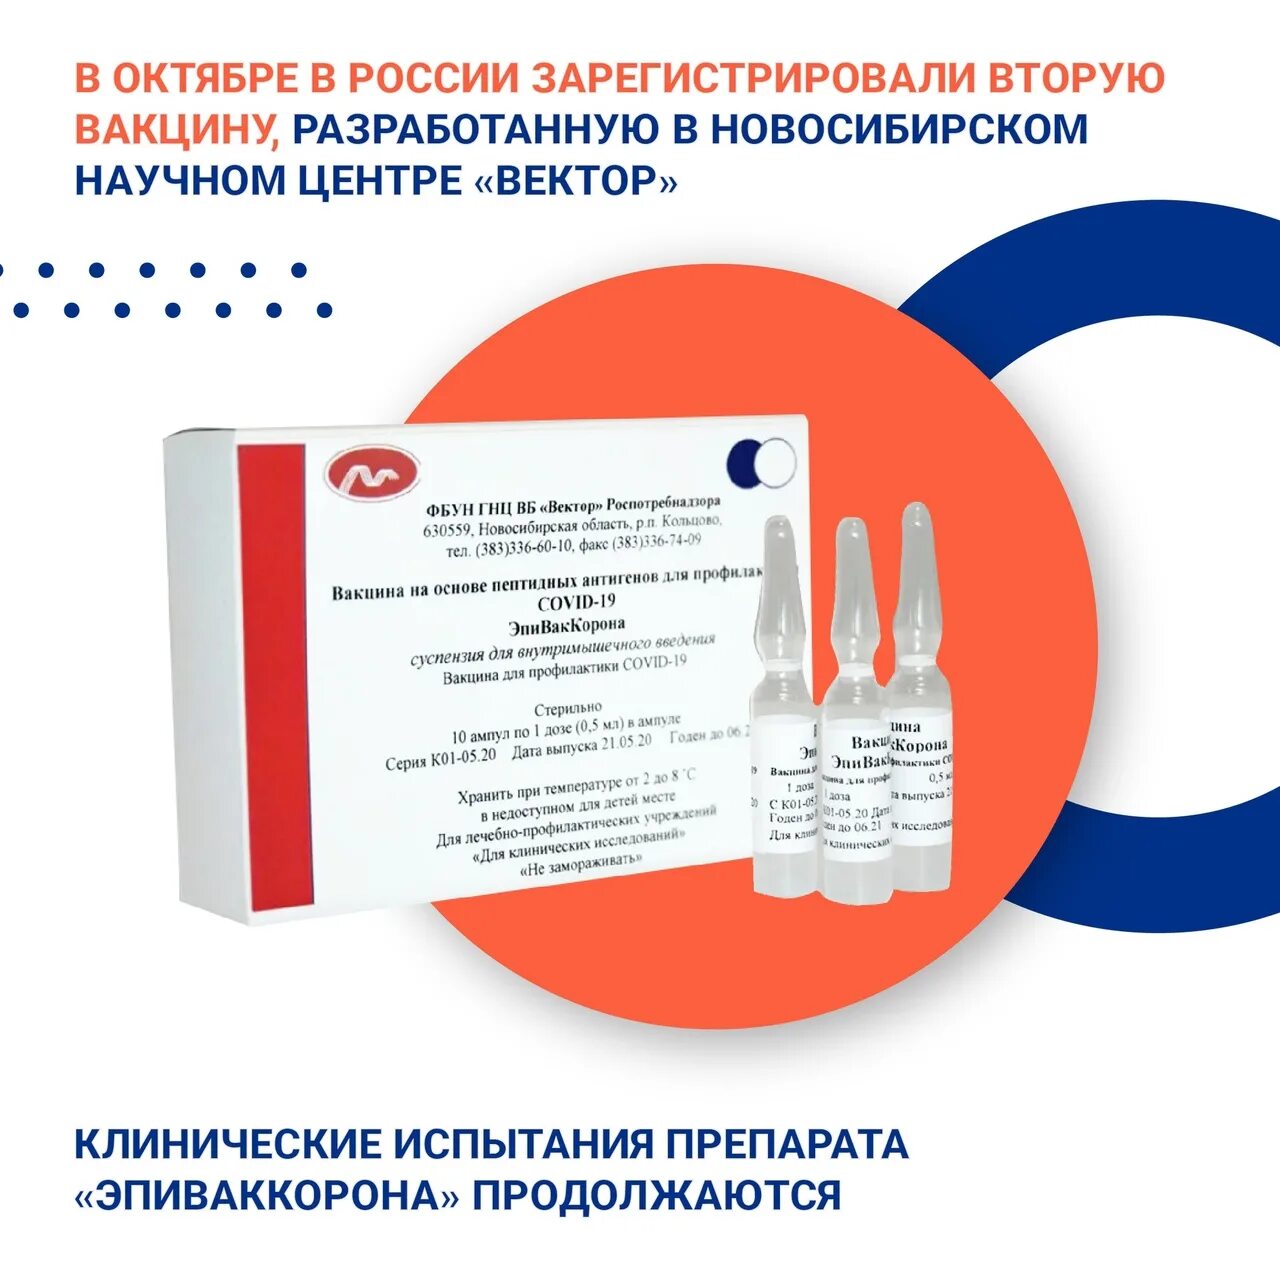 Где сделать прививку. Однокомпонентная вакцина от коронавируса. Куда делают прививку от коронавируса. Название прививки от коронавируса в России.